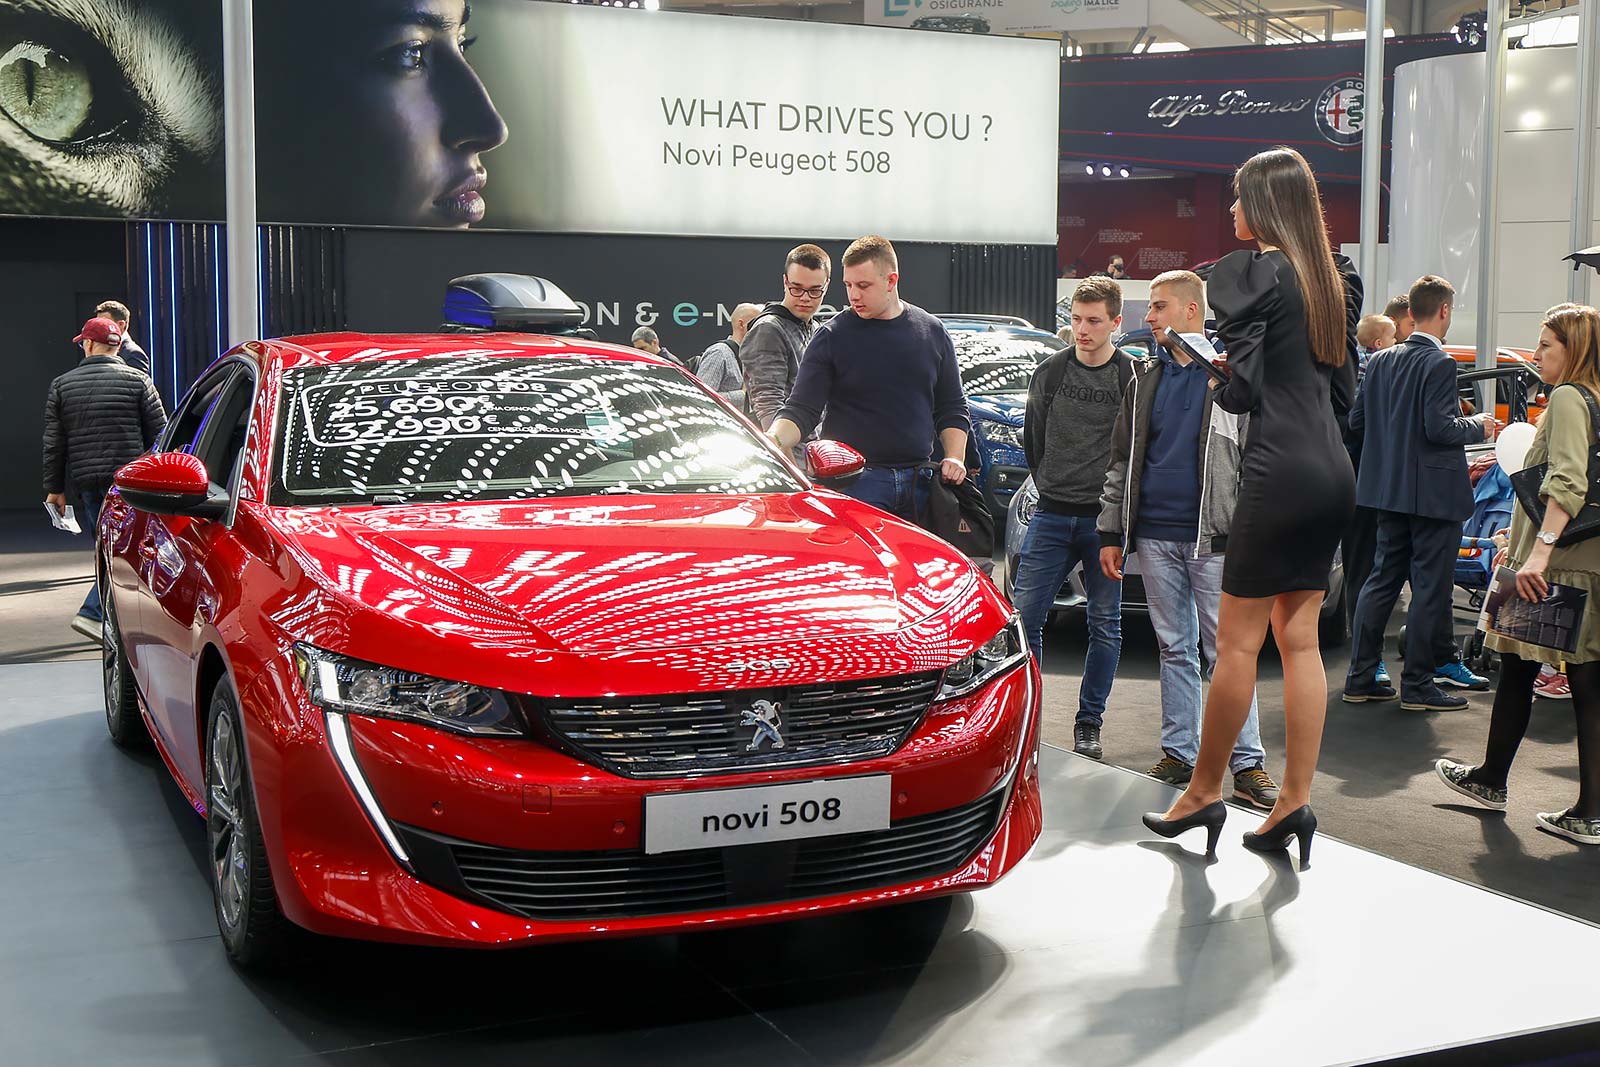 Peugeot 508 - automobil godine za 2019. godinu, u izboru Asocijacije automobilskih novinara Srbije